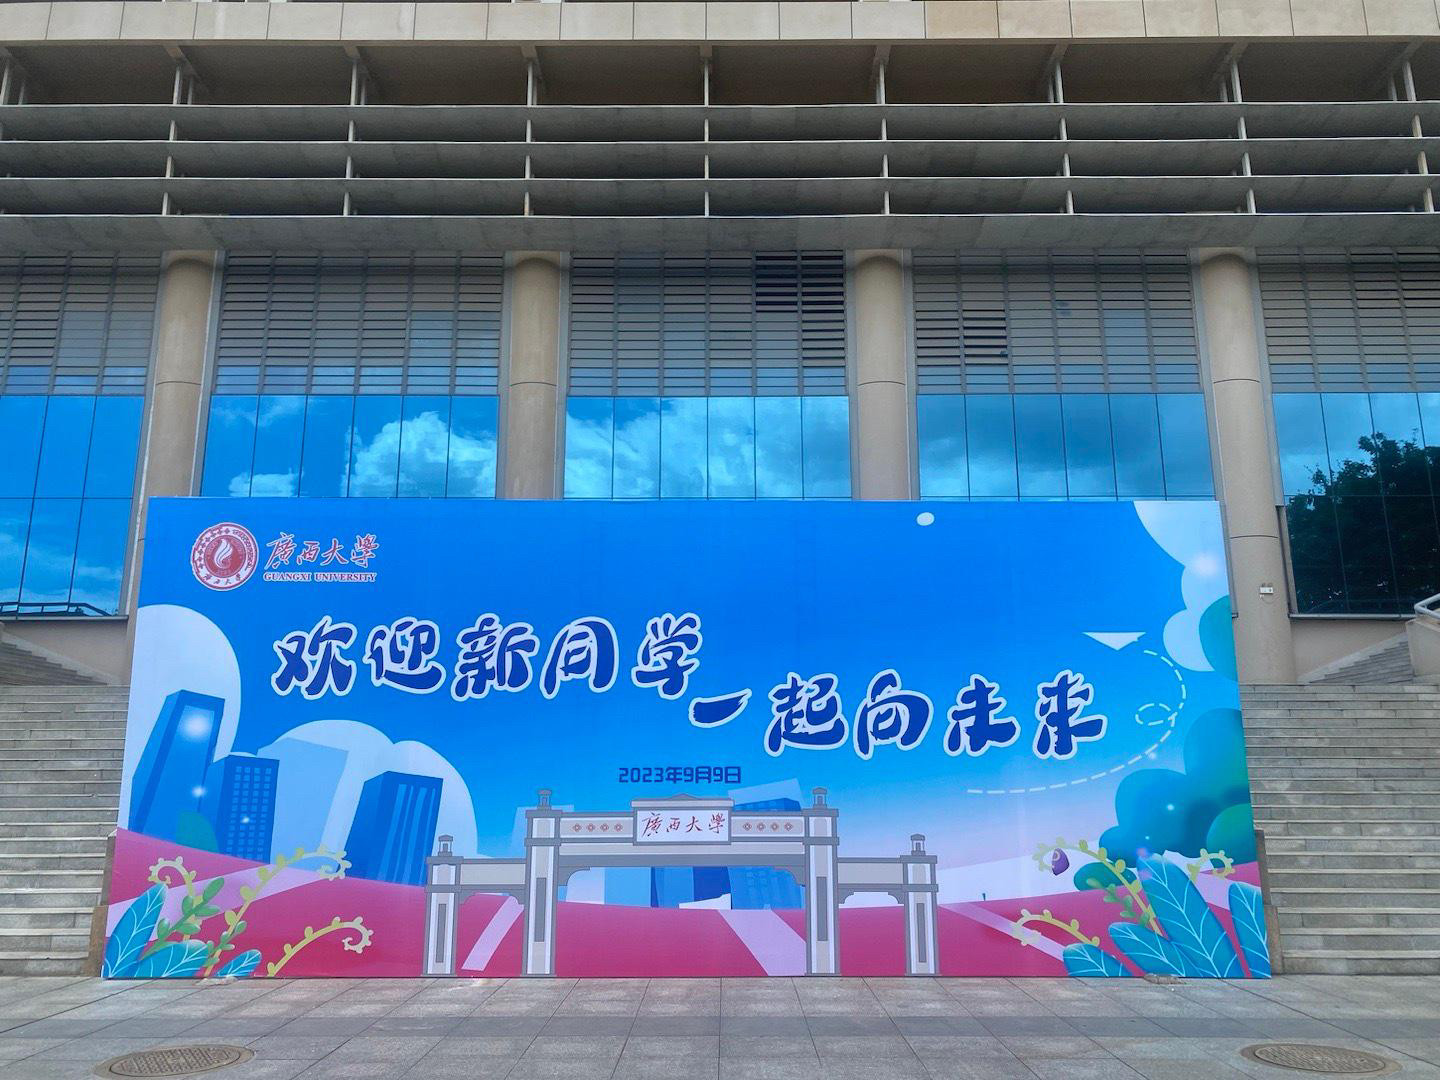 广西大学开学广告喷绘背景板